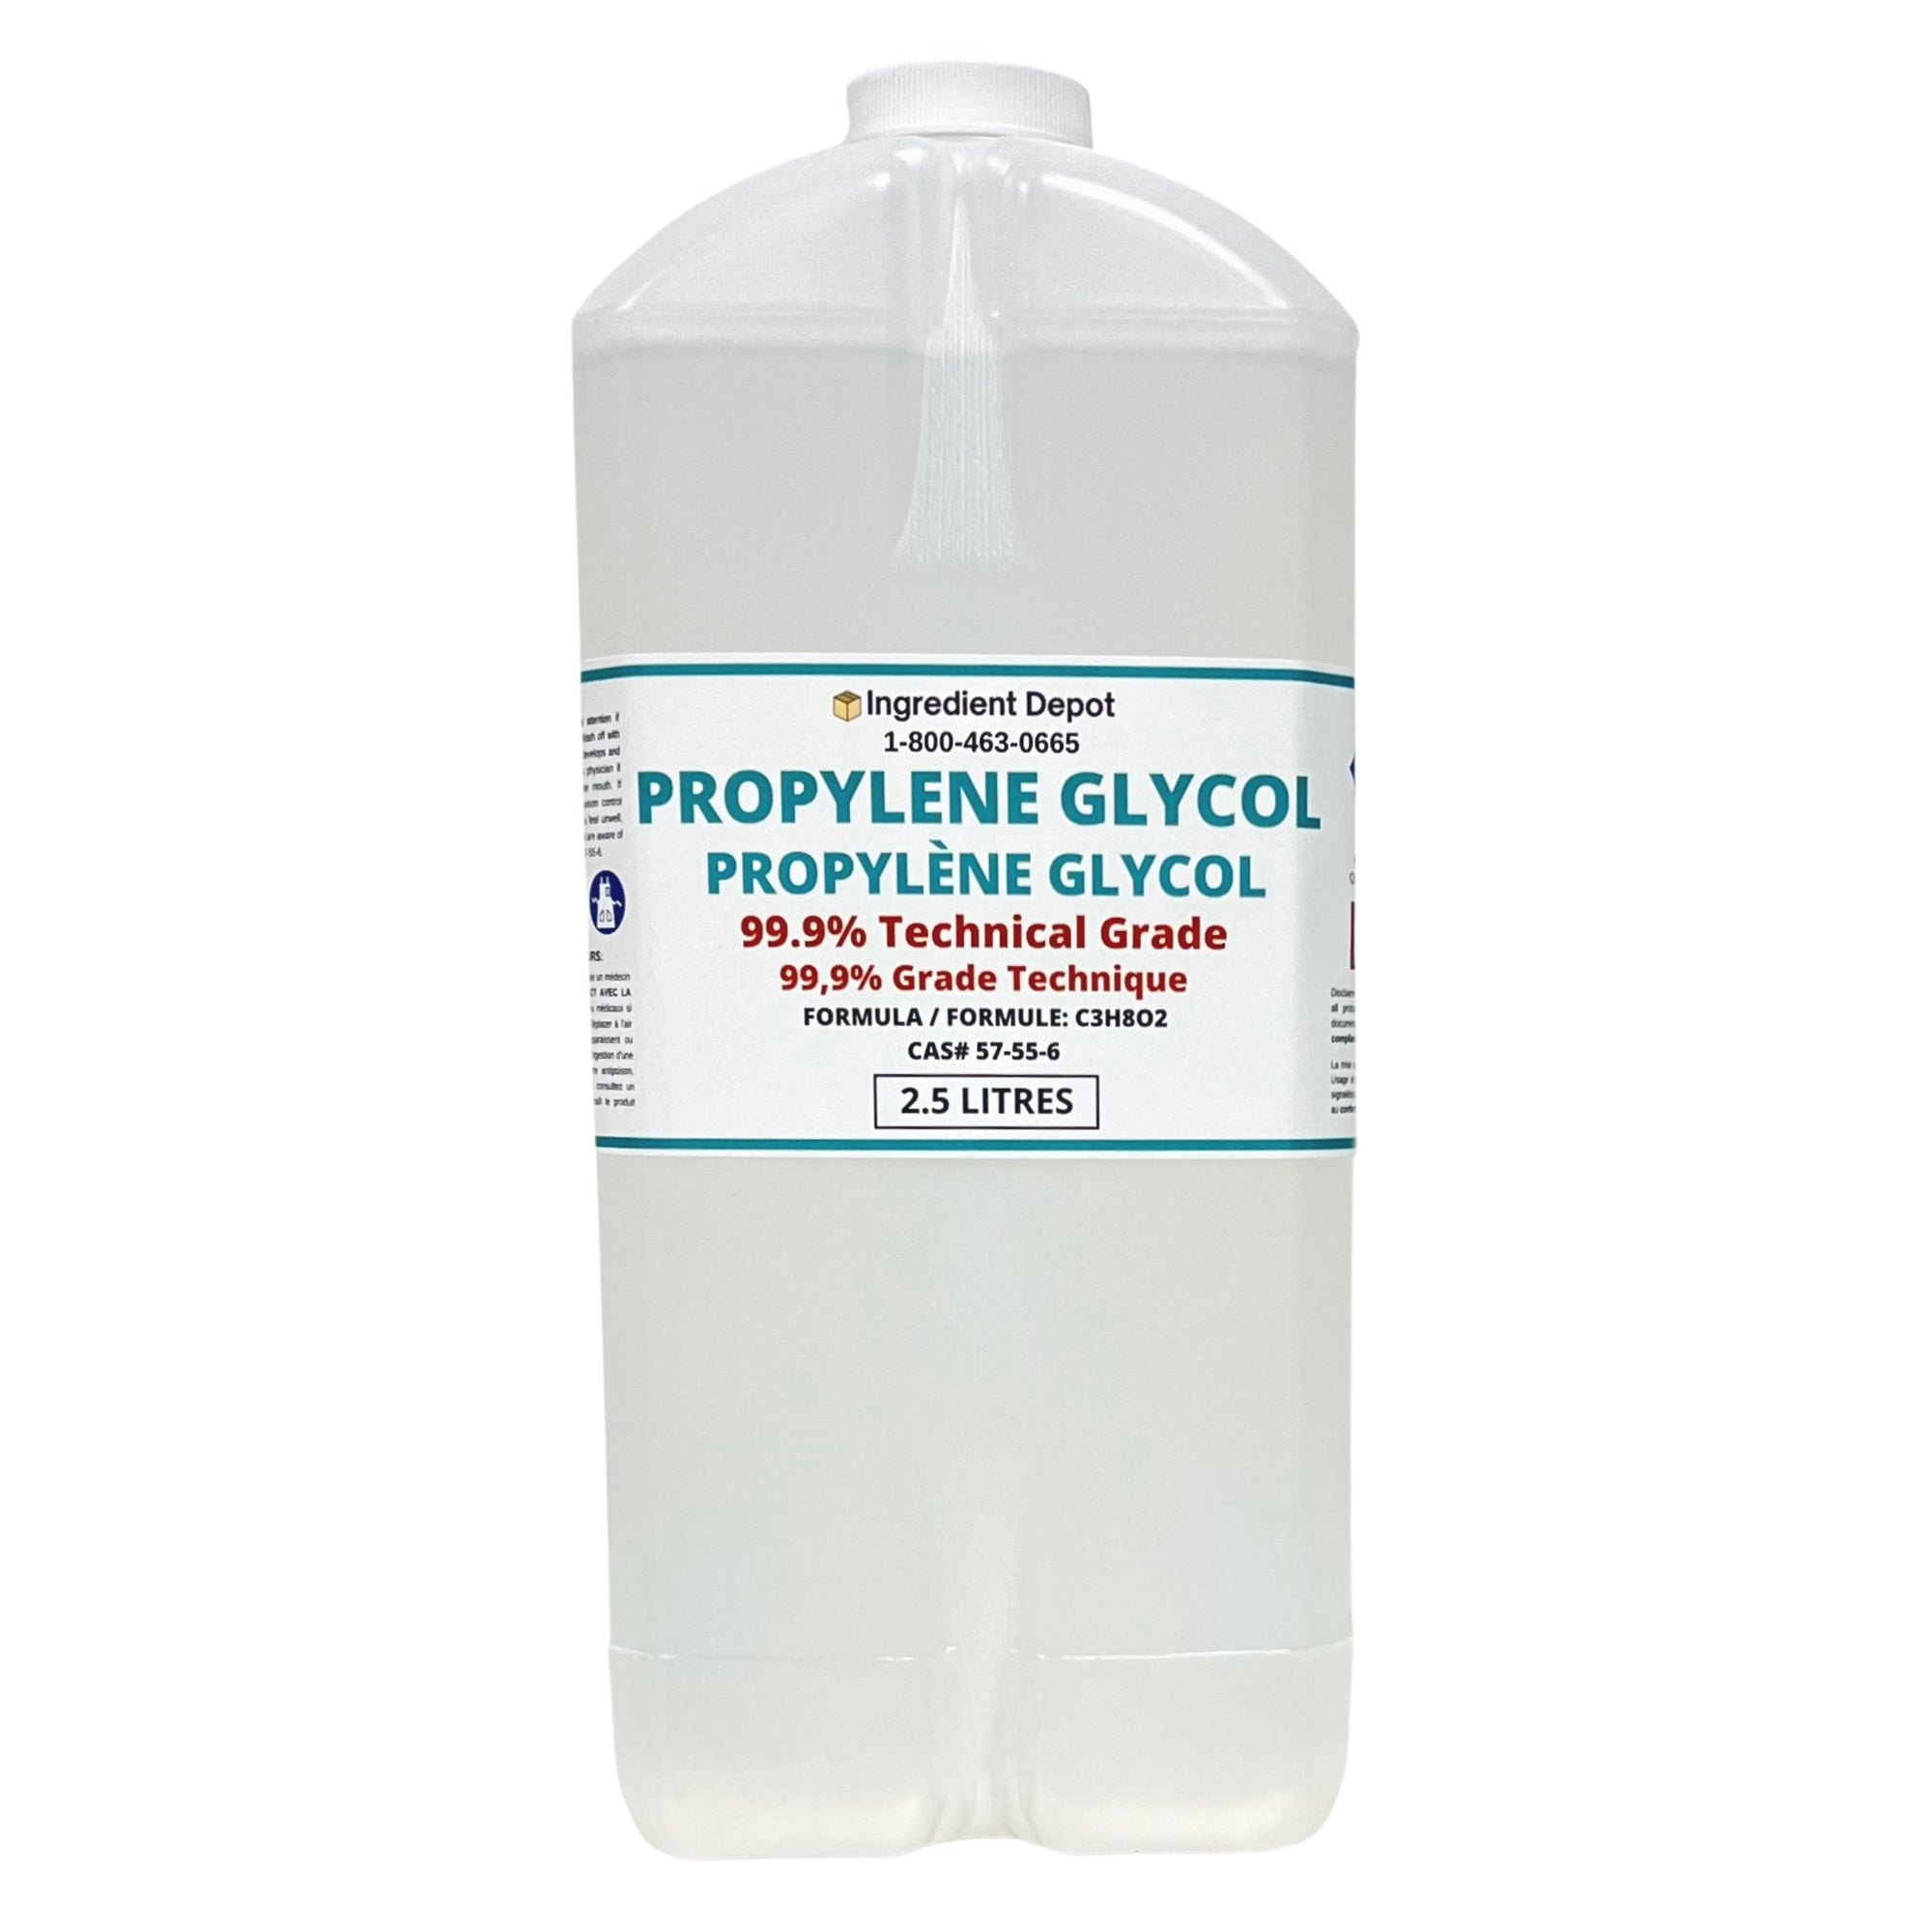 Propylene Glycol 99.9% Technical Grade 2.5 litres